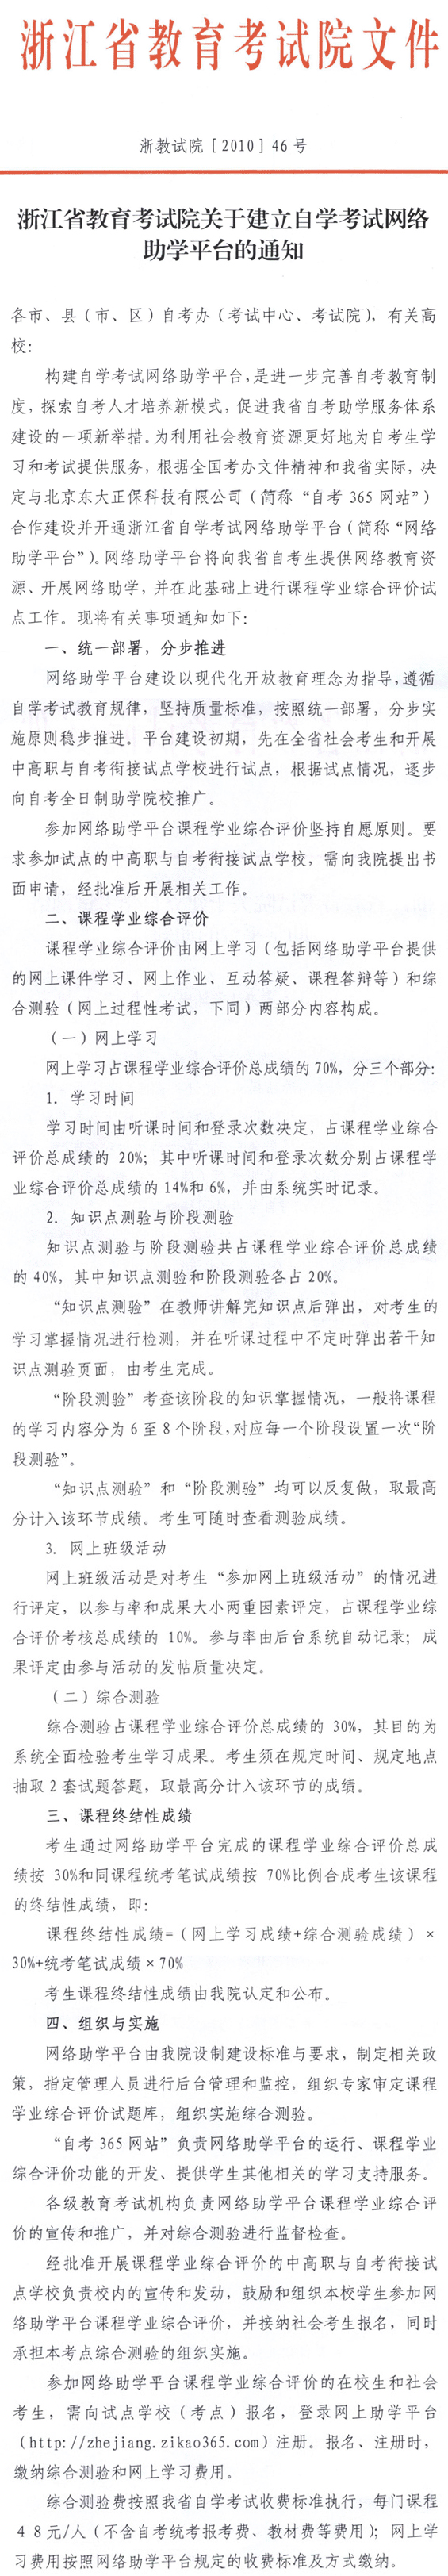 浙江省建立自学考试网络助学平台的通知1